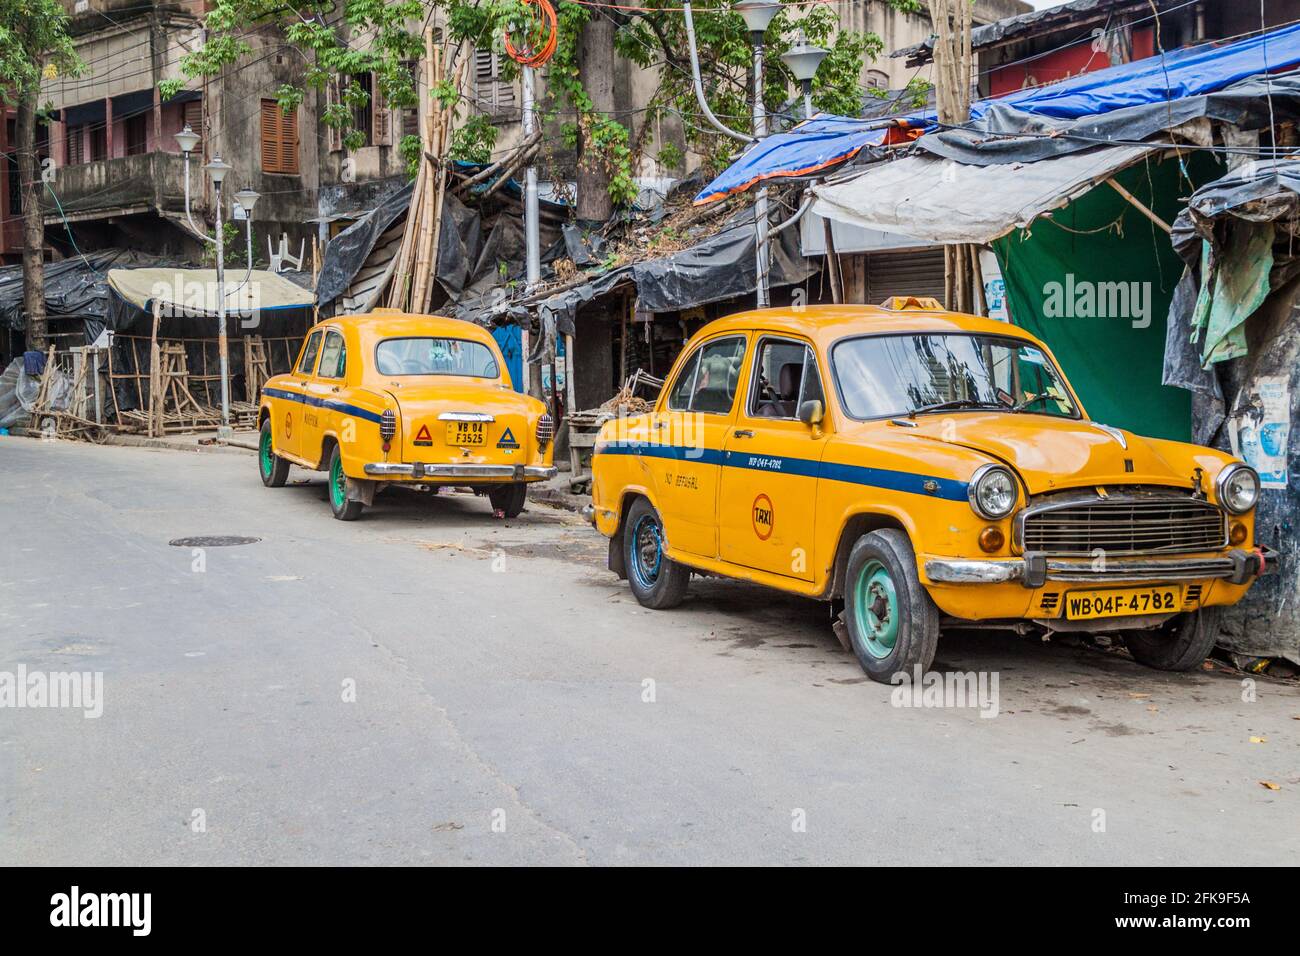 KOLKATA, INDIA - OCTOBER 31, 2016: View of yellow Hindustan Ambassador taxis in Kolkata, India Stock Photo